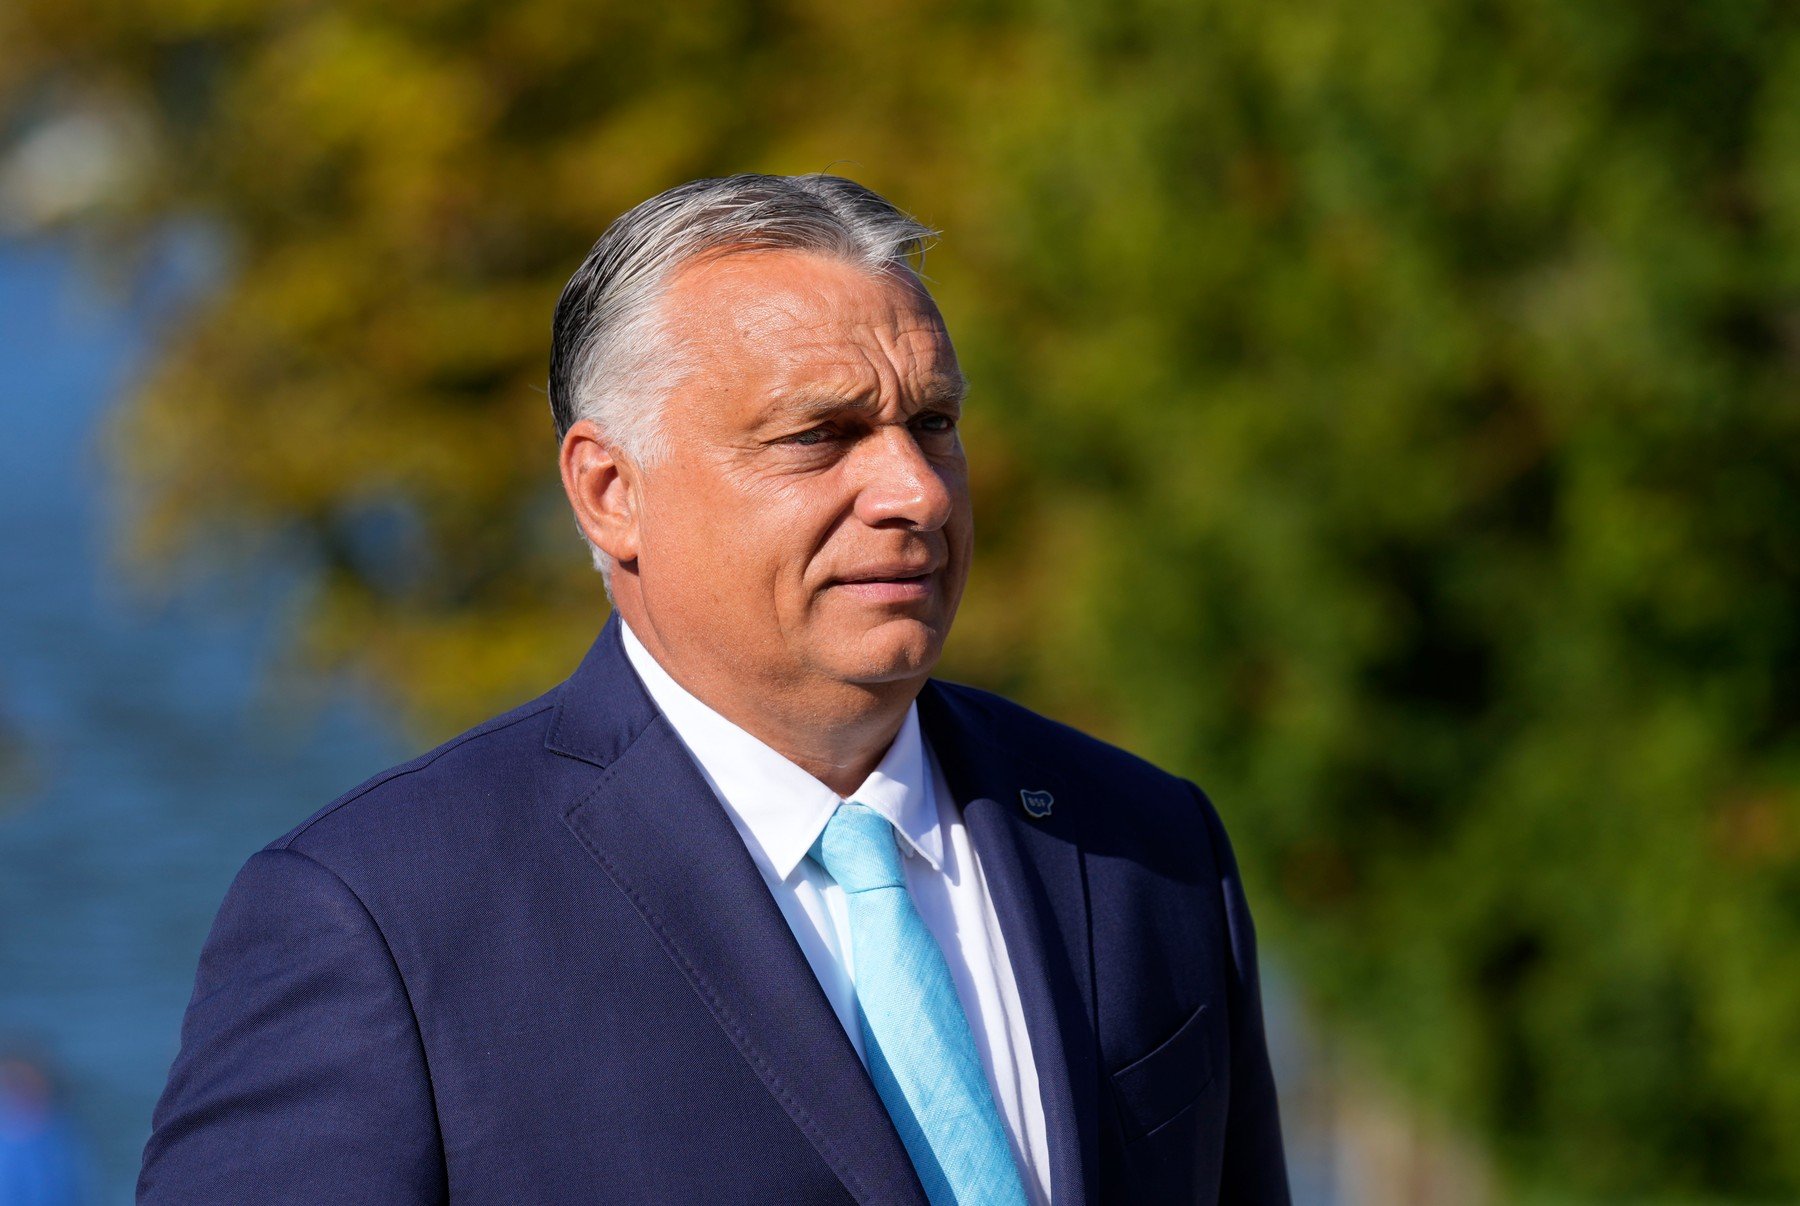 Újabb szigorítások jöhetnek Magyarországon? Orbán Viktor megszólalt az ügyben